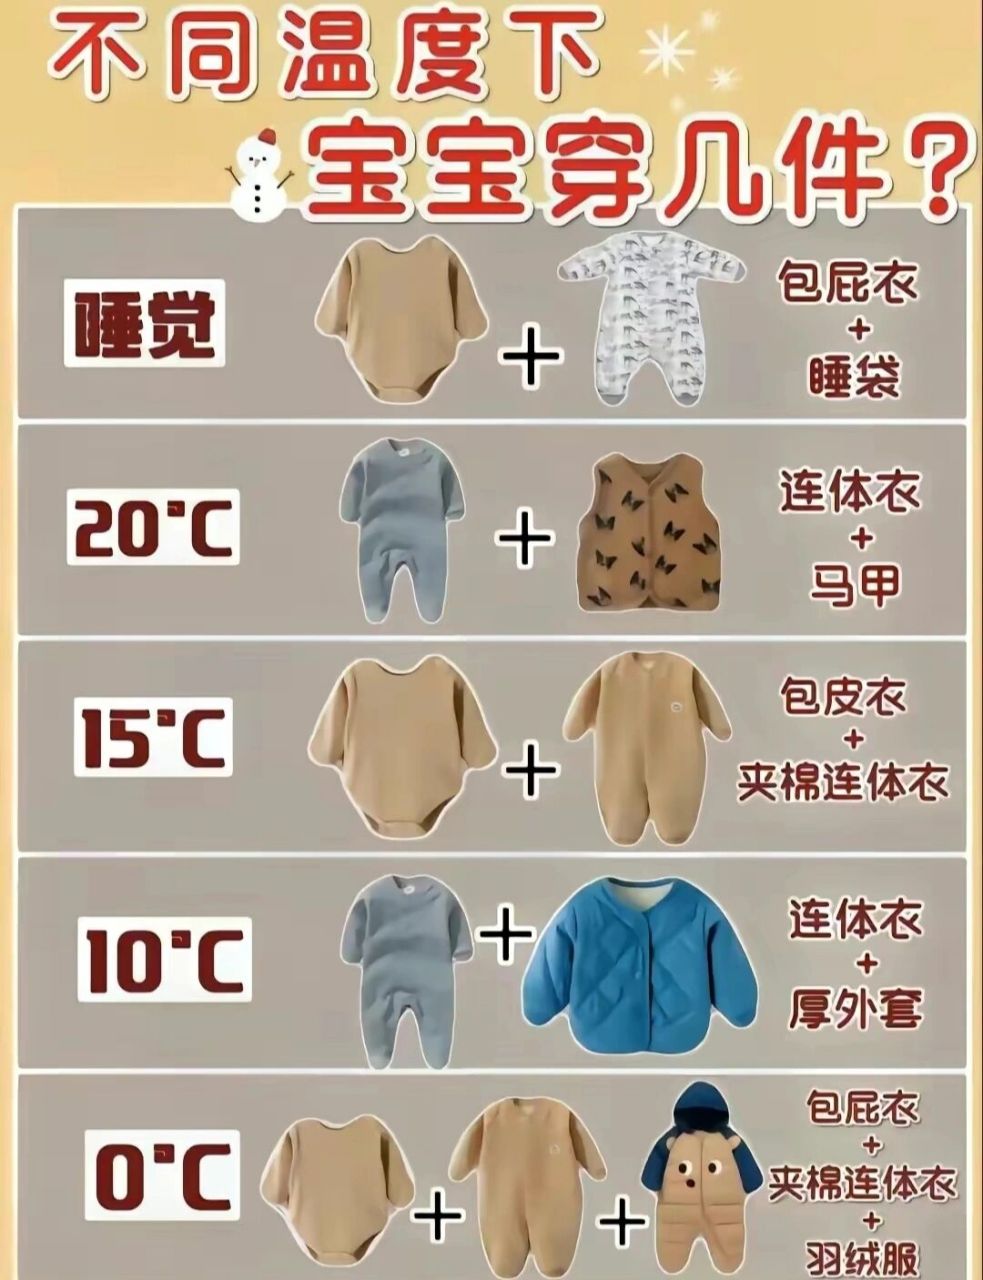 温度穿衣对照表图片图片